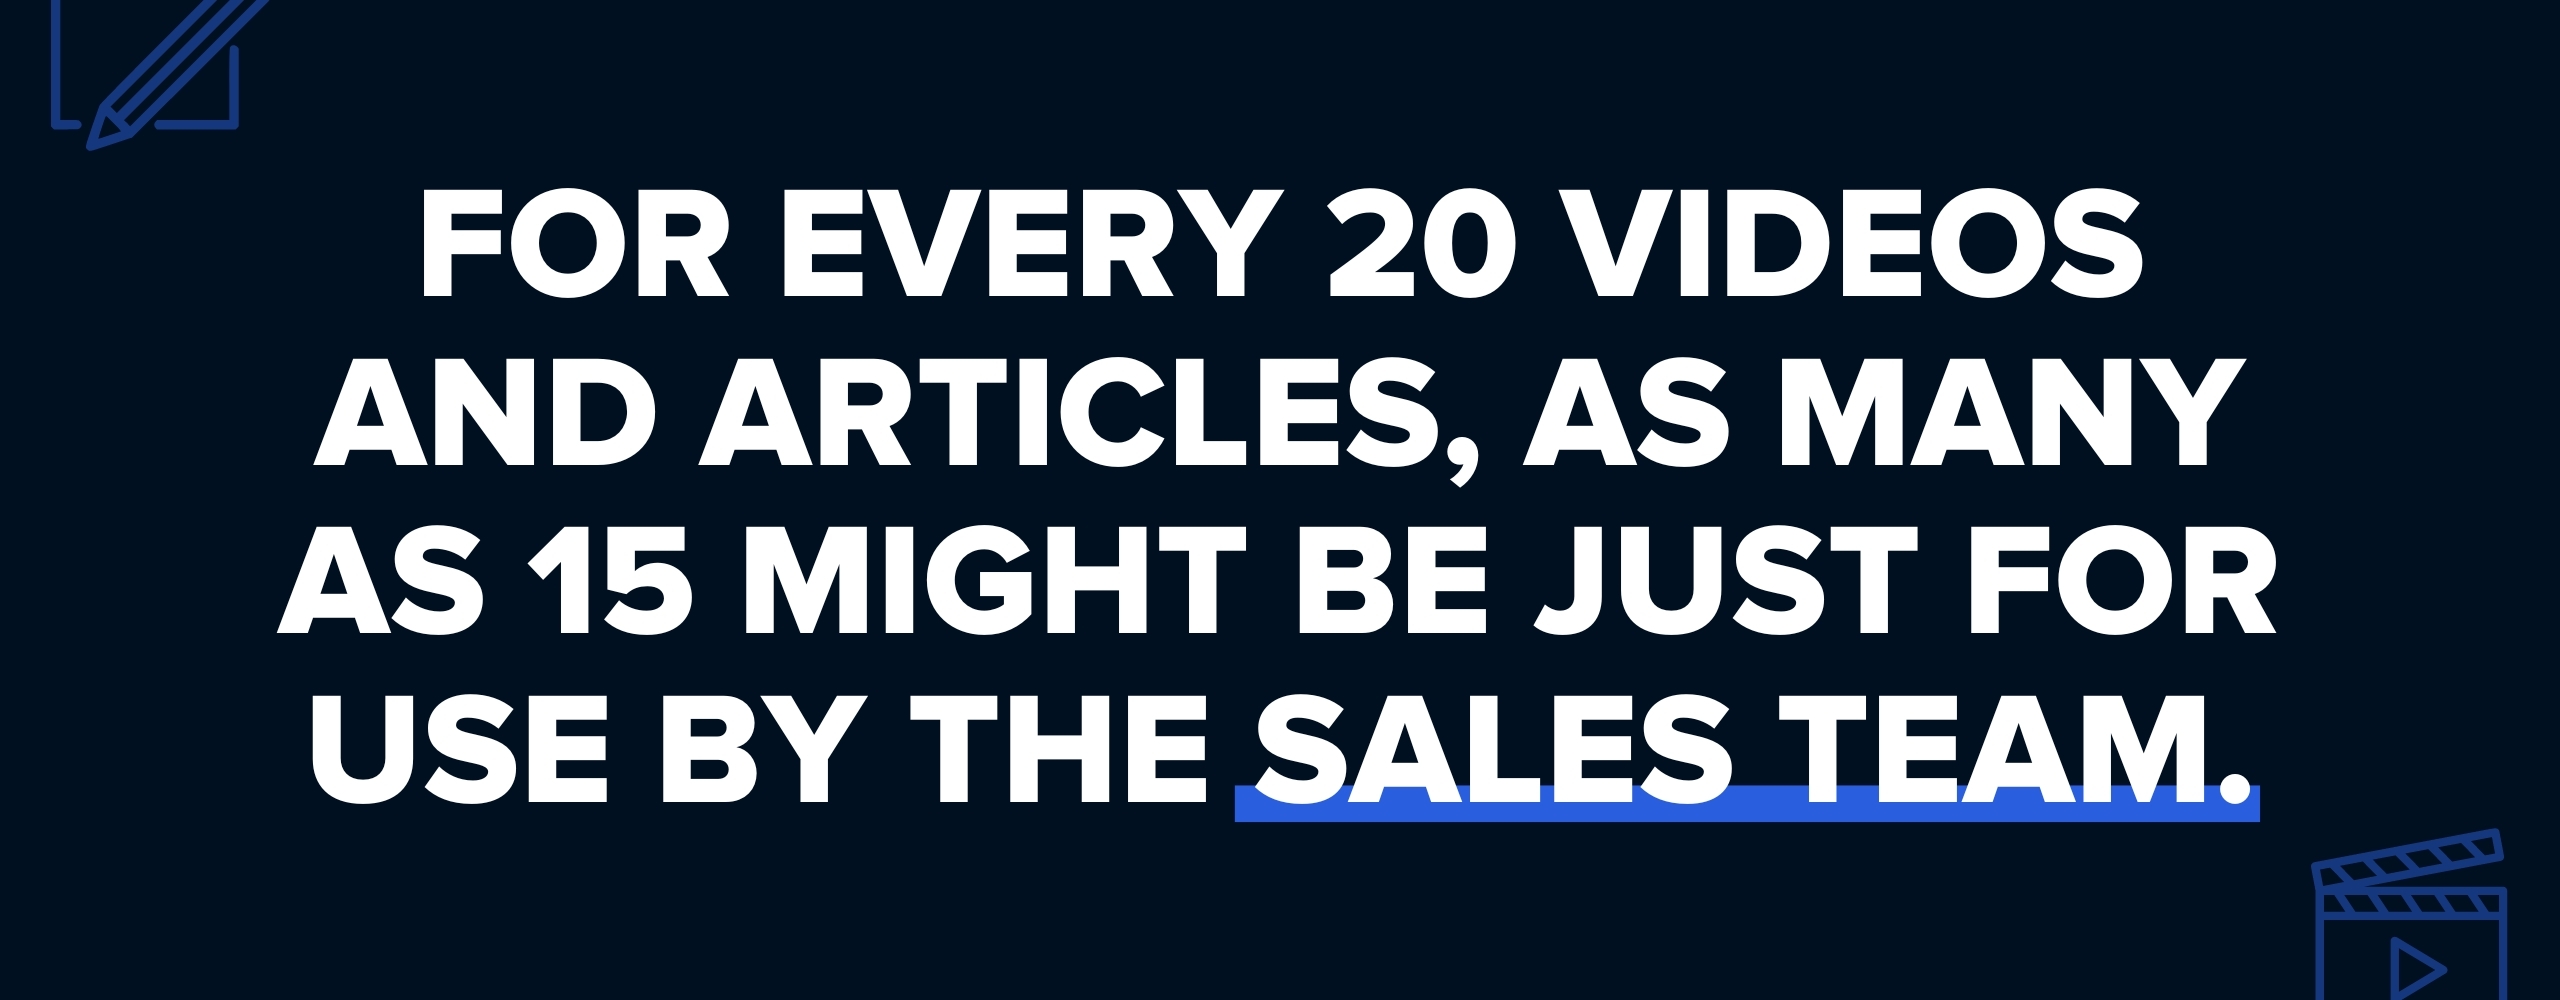 sales-focus-content-marketing